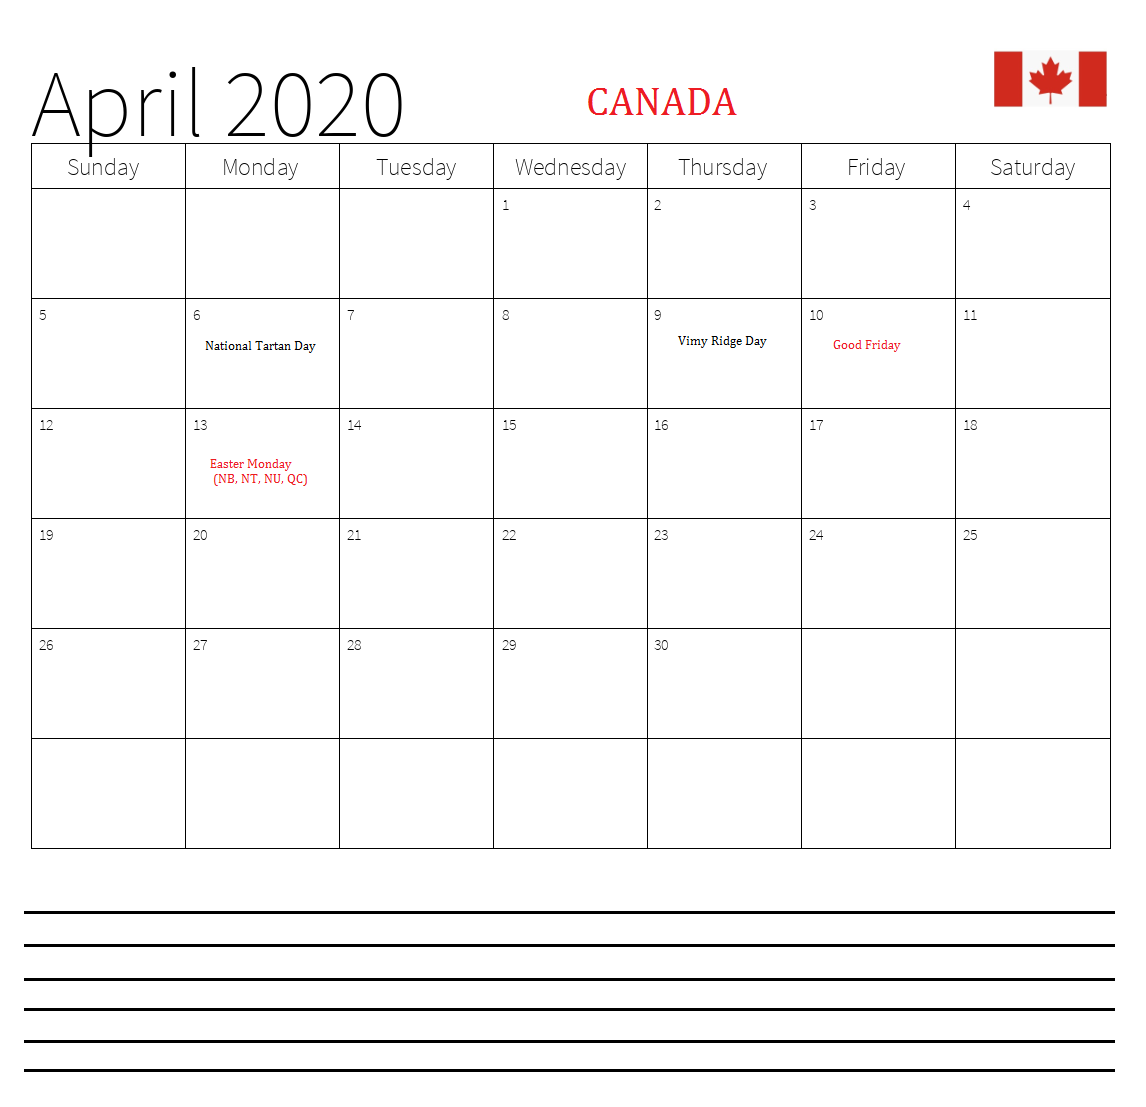 April 2020 Canada Calendar